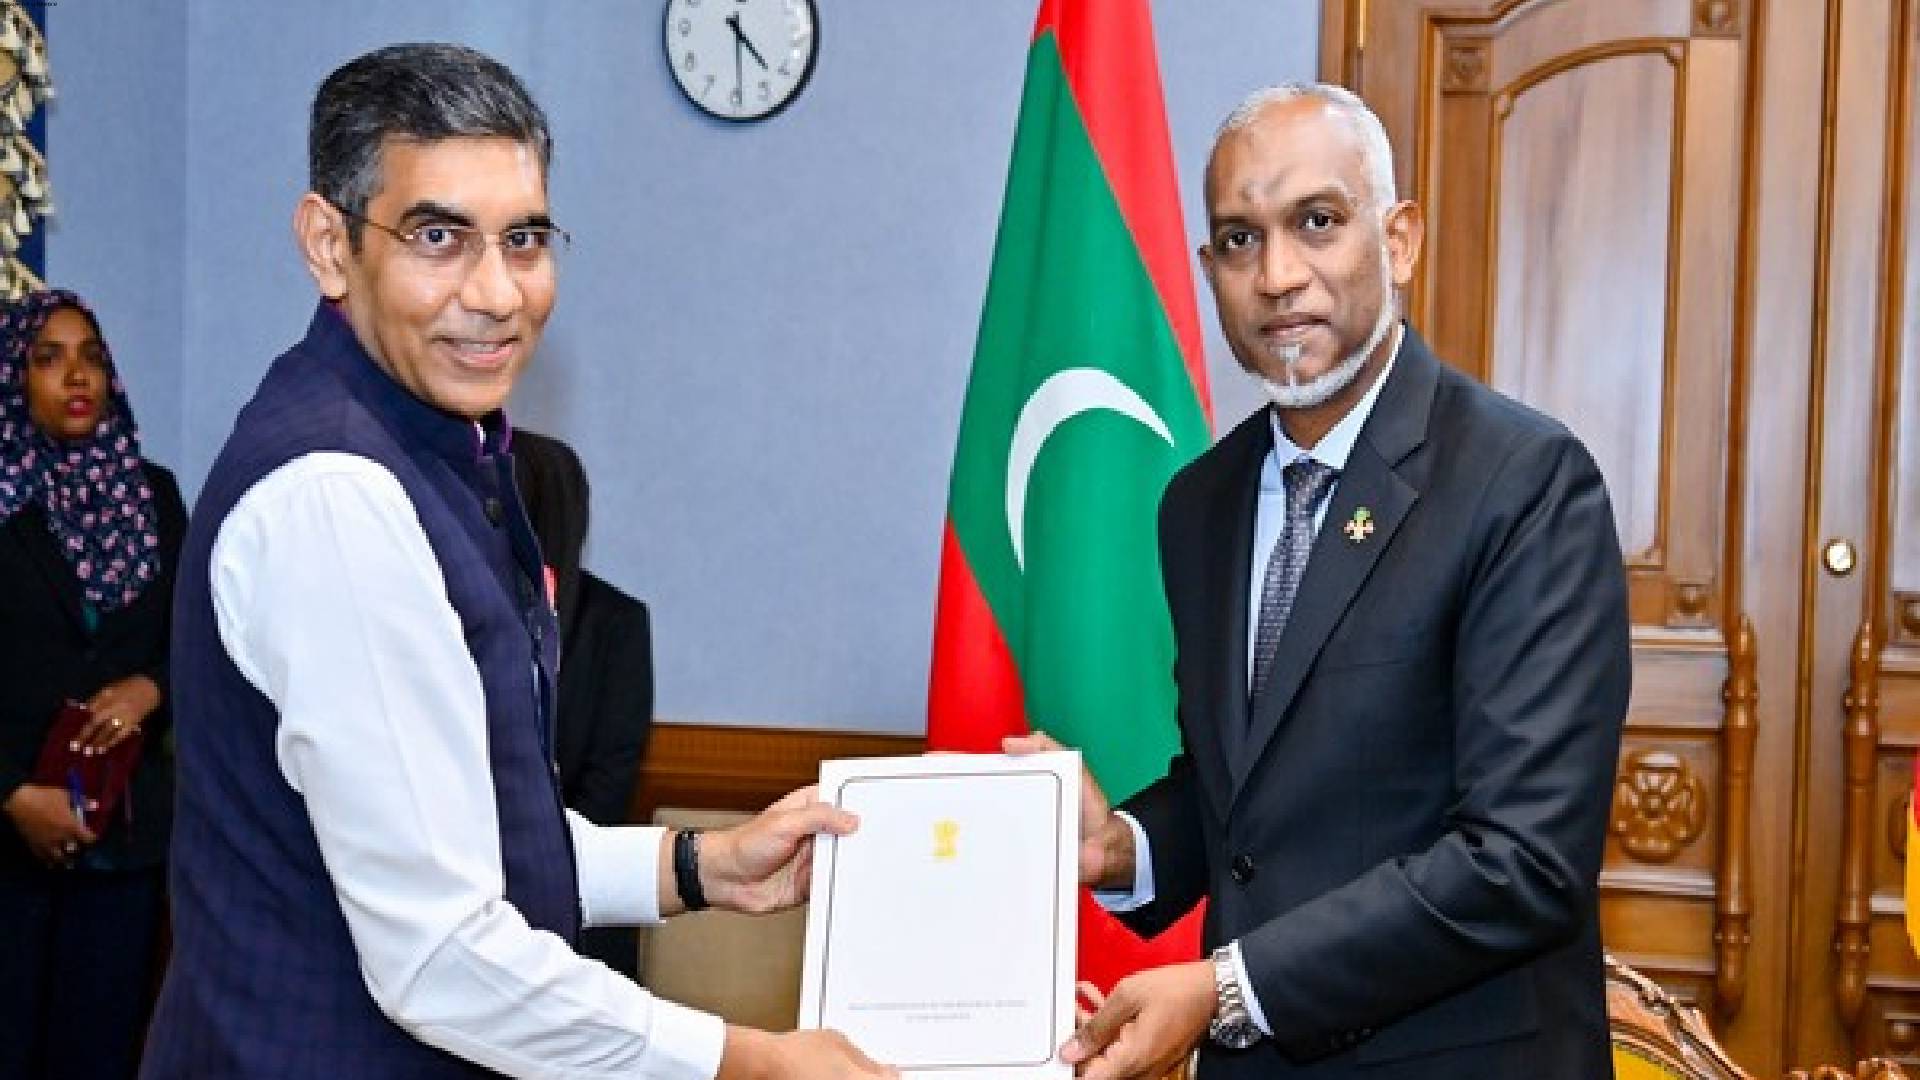 Mohamed Muizzu accepts invitation to attend PM Modi's swearing-in ceremony: Maldives Prez Office